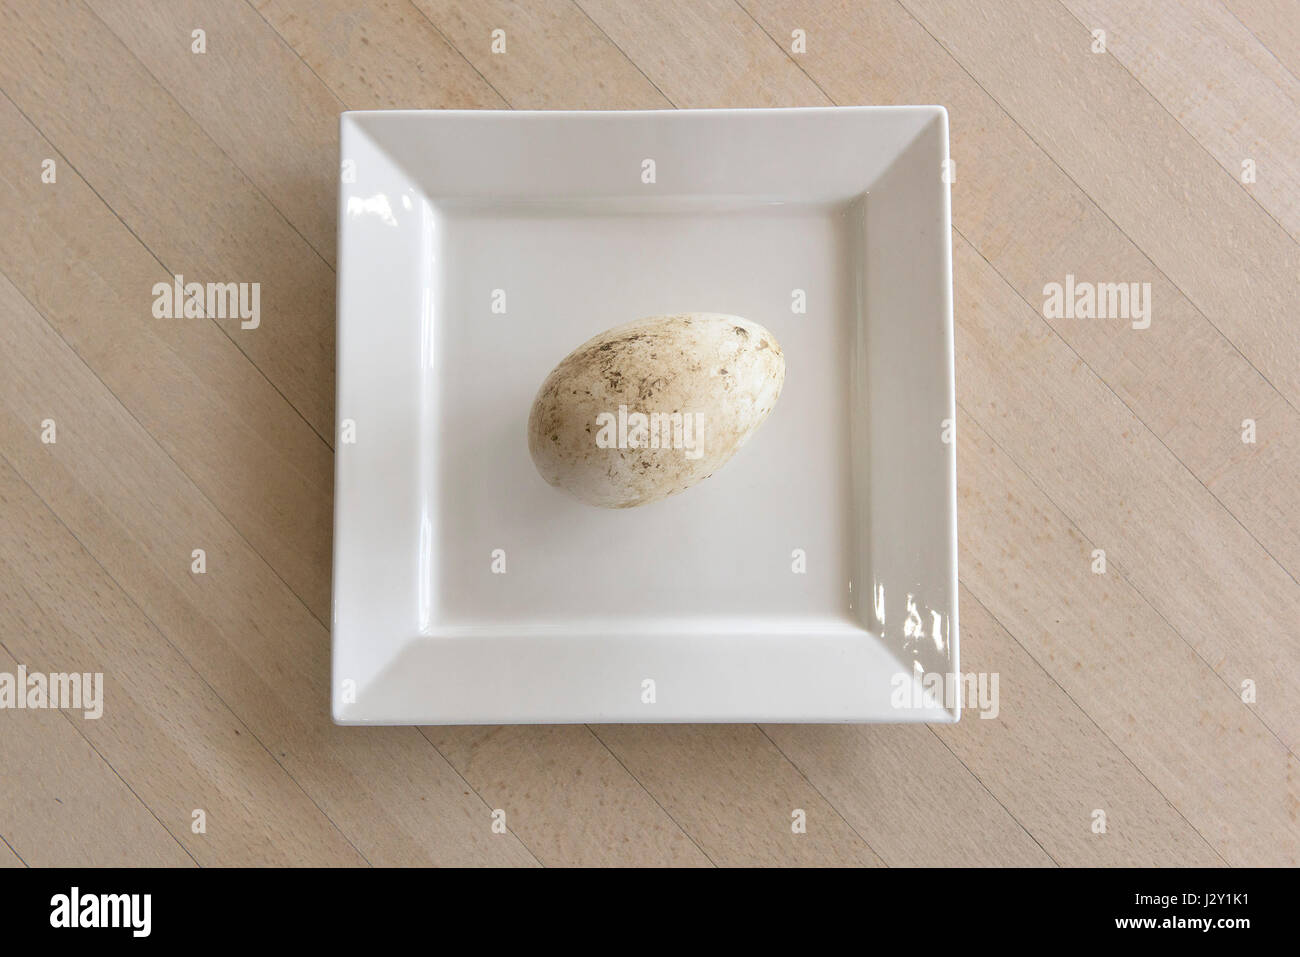 Eine sehr frische Gänseei auf einem Teller ungewaschenen großes Ei Shell natürliche Natur minimalistisch Bild Stockfoto